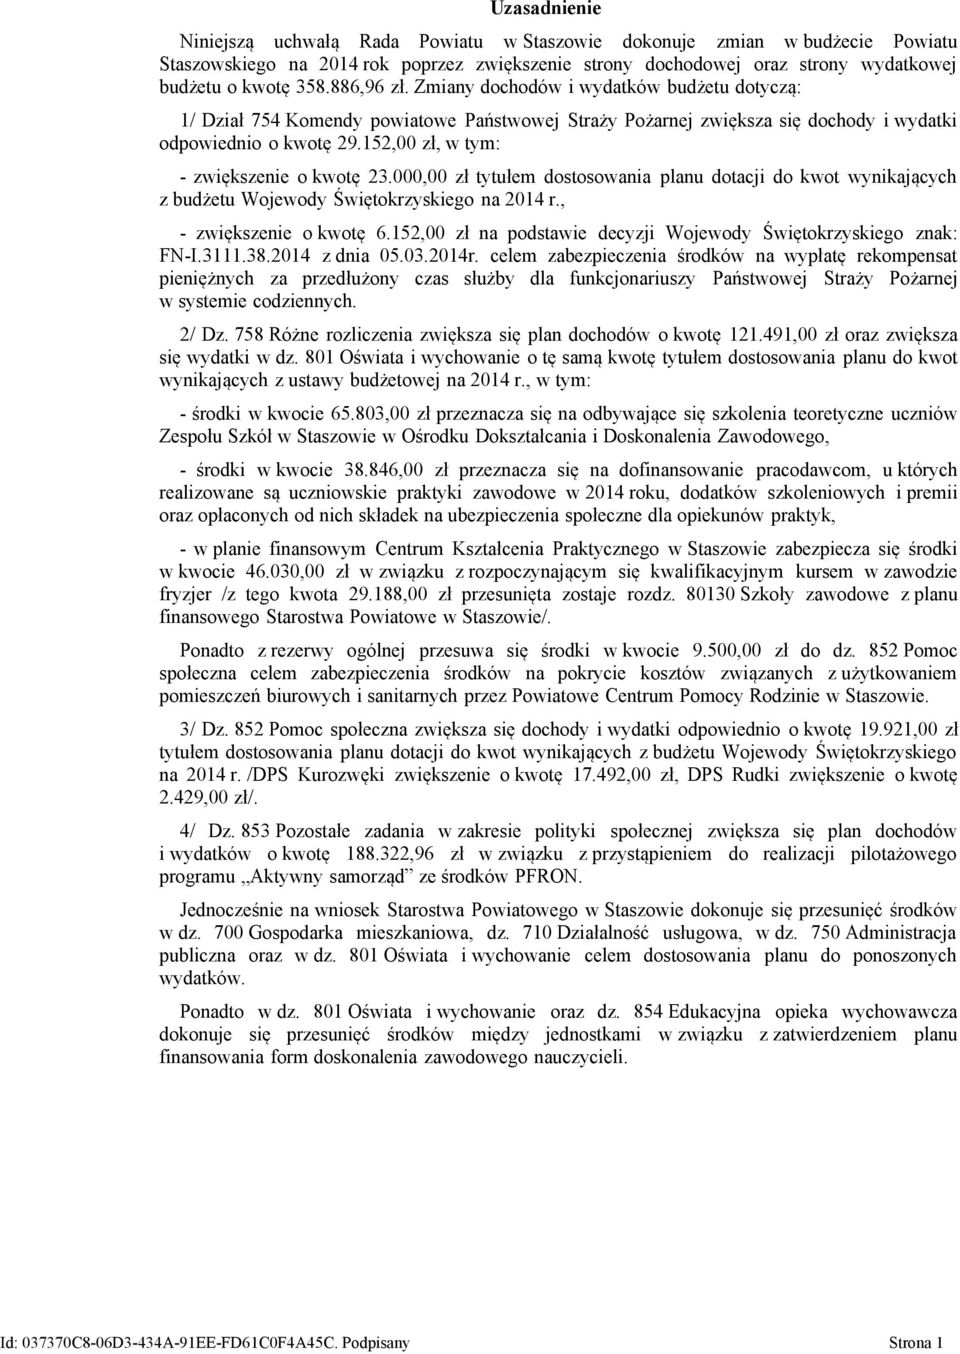 00 zł tytułem dostosowania planu dotacji do kwot wynikających z budżetu Wojewody Świętokrzyskiego na 2014 r., - zwiększenie o kwotę 6.